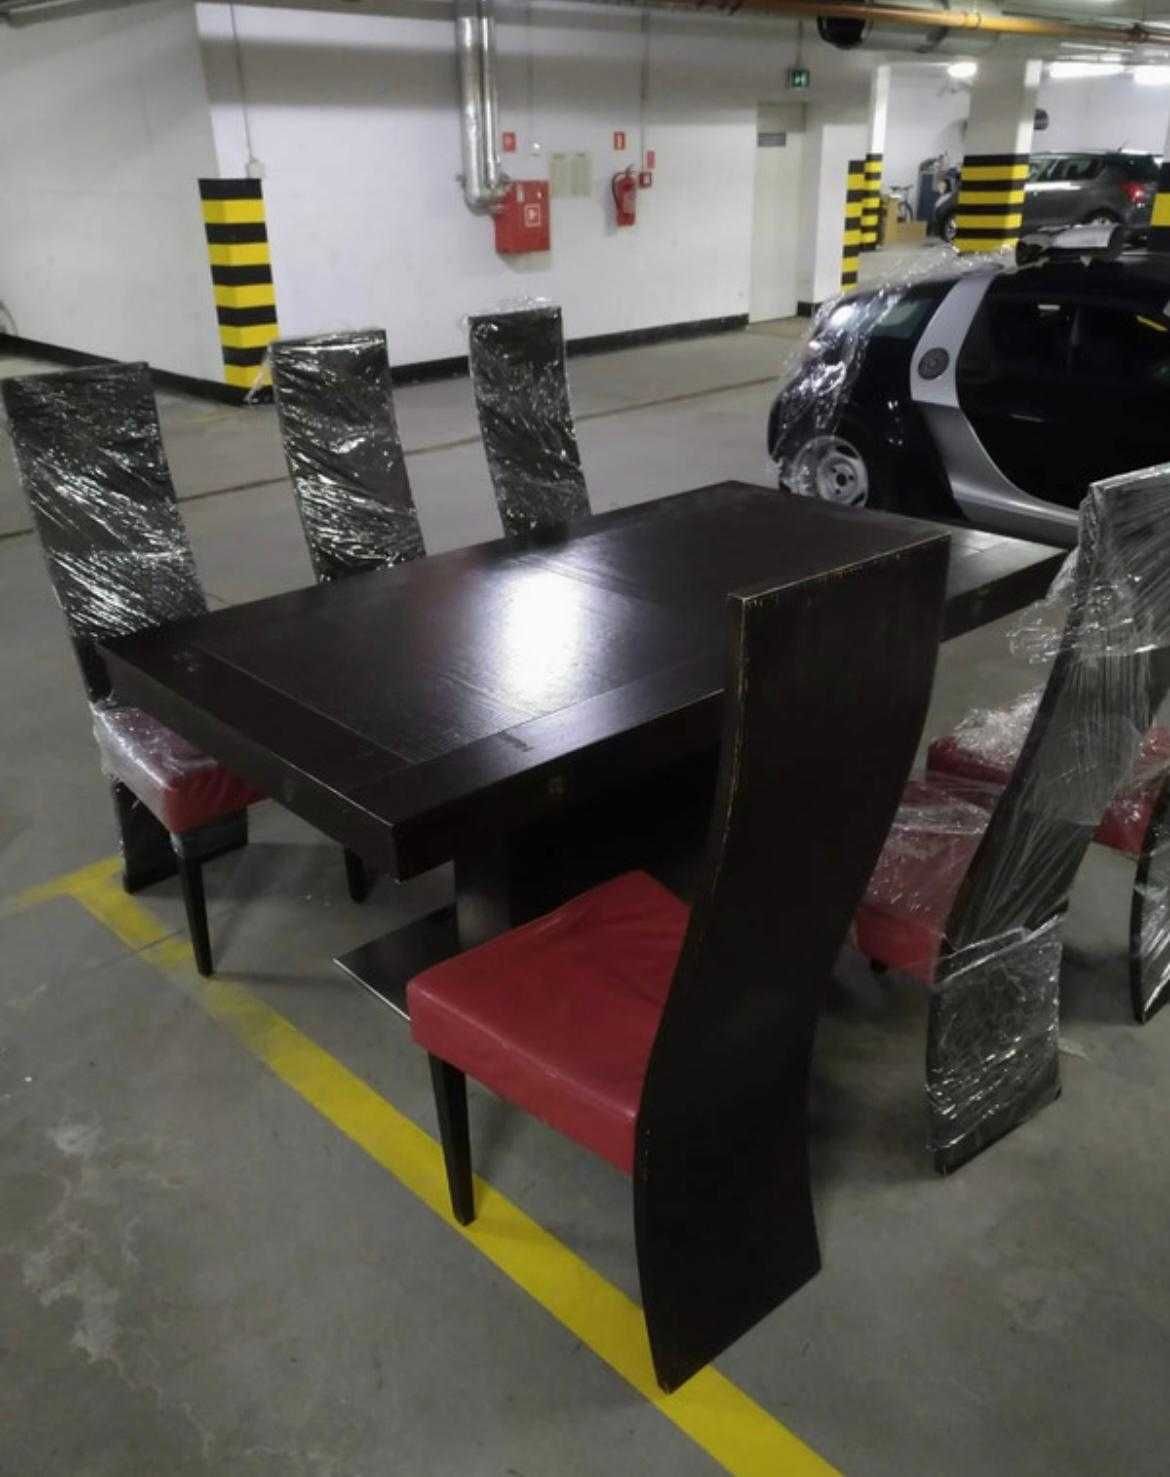 OKAZJA!!! Stół krzesła komplet firmy "Prestige" za ułamek ceny.